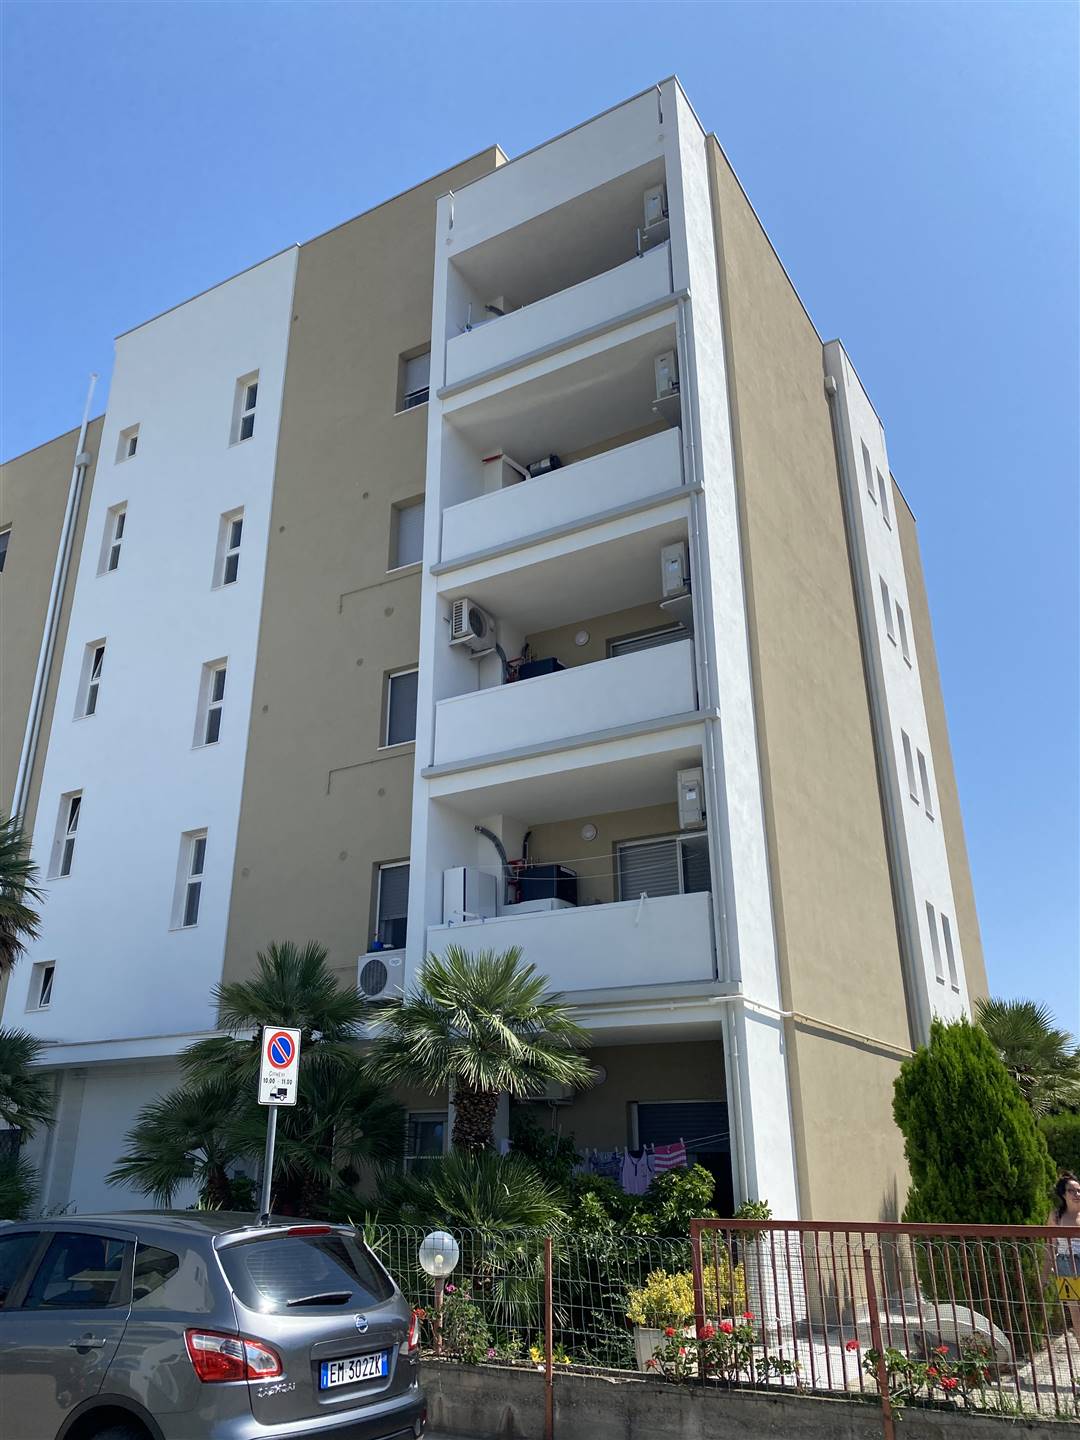 Appartamento in vendita a Nova Siri, 6 locali, zona Località: MARINA DI NOVA SIRI, prezzo € 126.000 | PortaleAgenzieImmobiliari.it